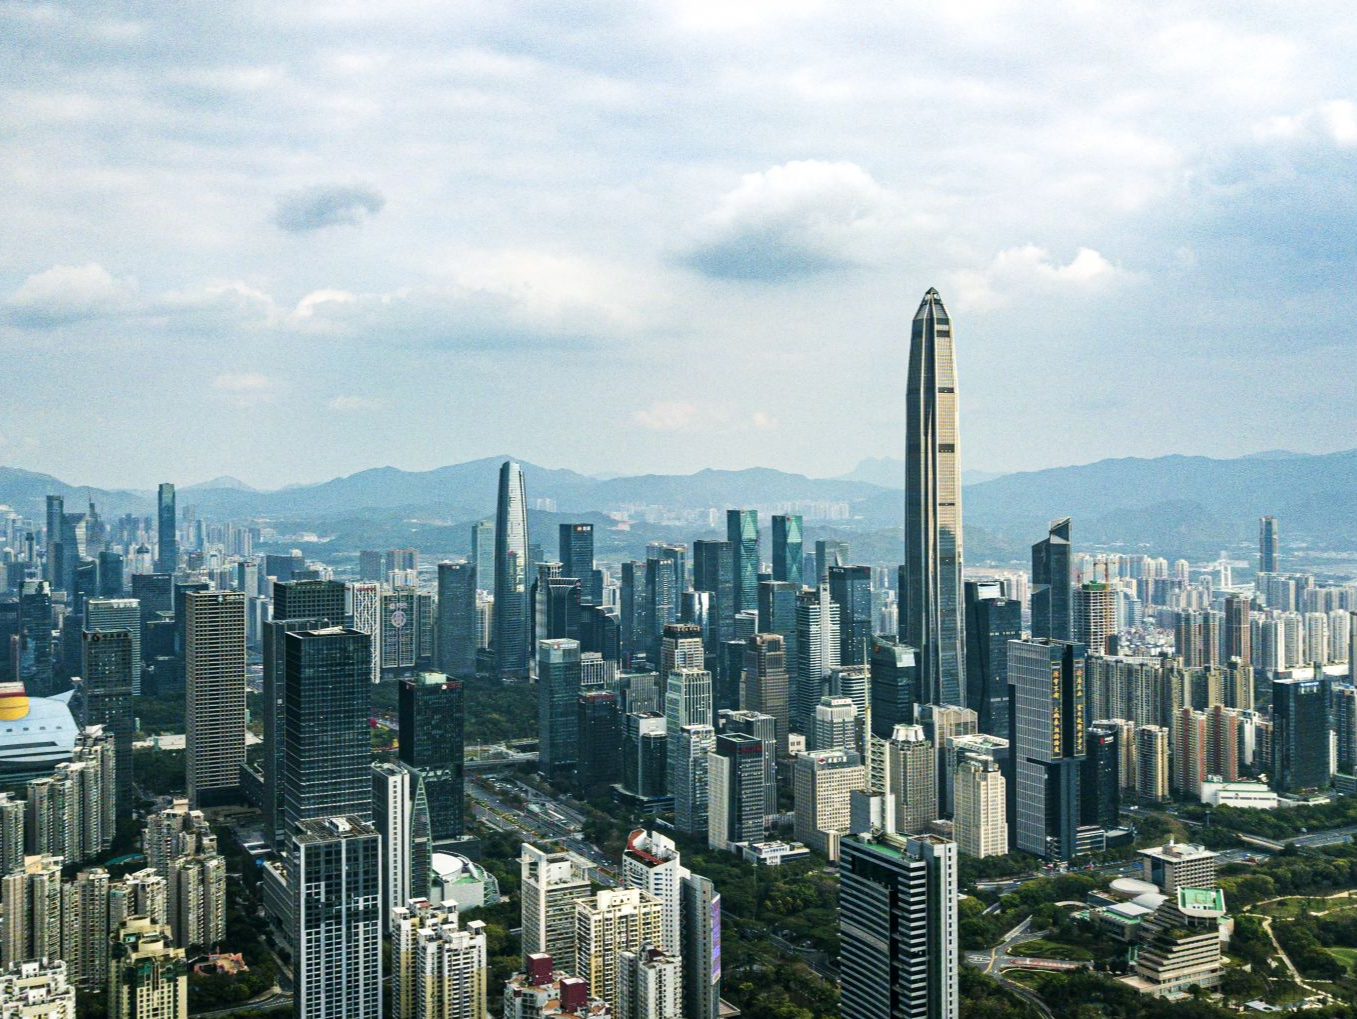 深圳品牌建设提升城市竞争力 192个知名品牌国内细分市场占有率第一